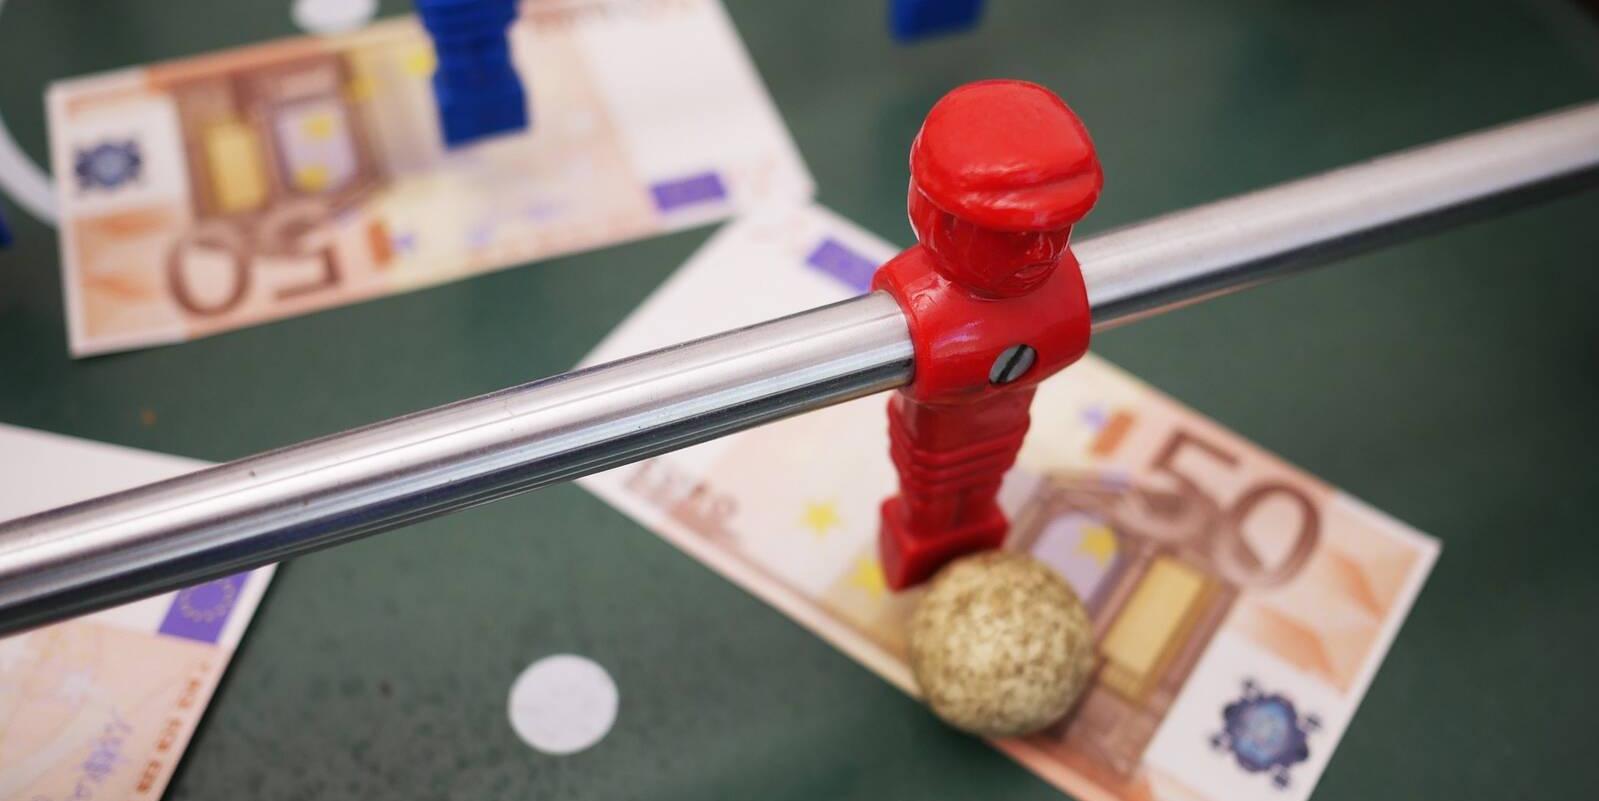 Los países europeos, como Francia y España, están cambiando drásticamente las regulaciones de los juegos de azar en línea